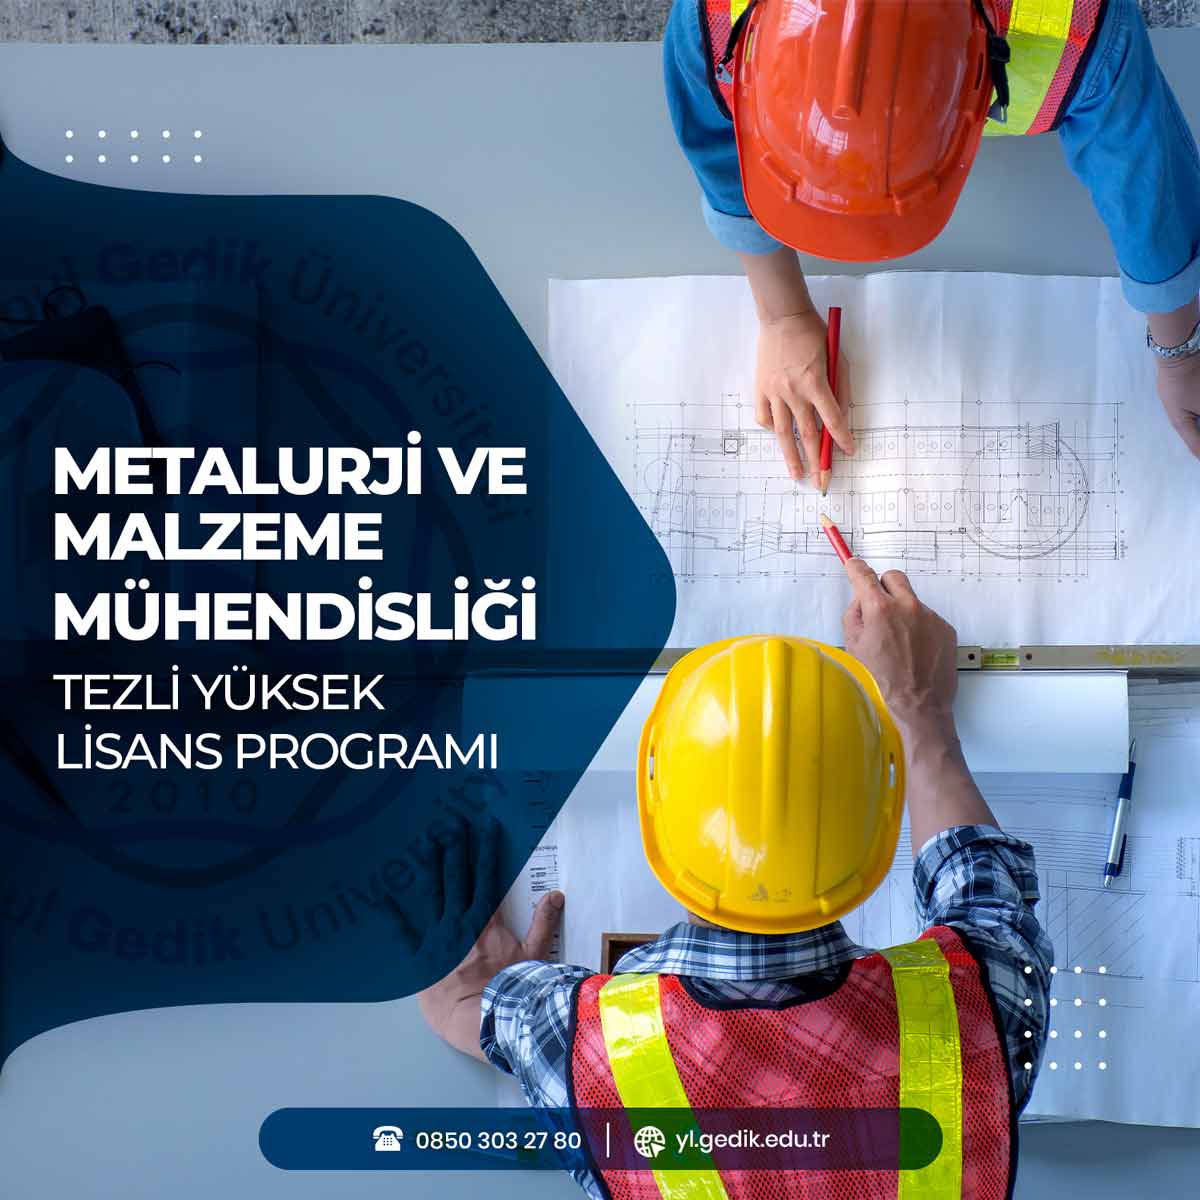 Metalurji ve Malzeme Mühendisliği Tezli Yüksek Lisans Programı